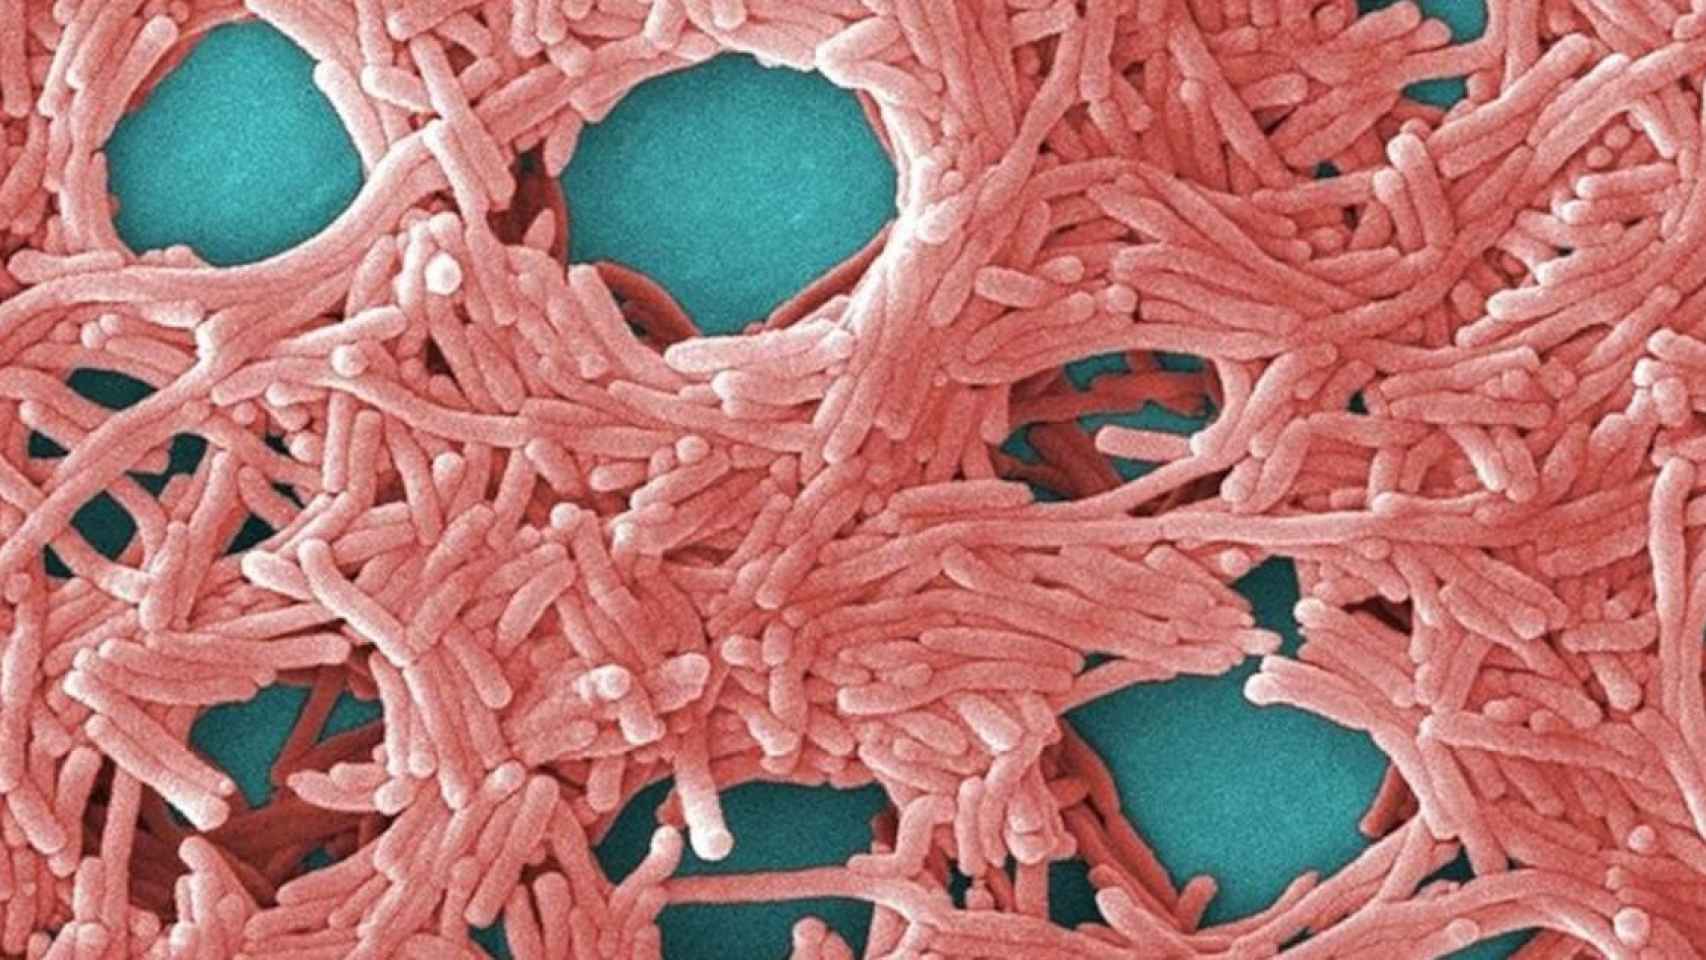 Bacterias de legionela, causante de las infecciones de legionelosis, en una imagen microscópica / EP